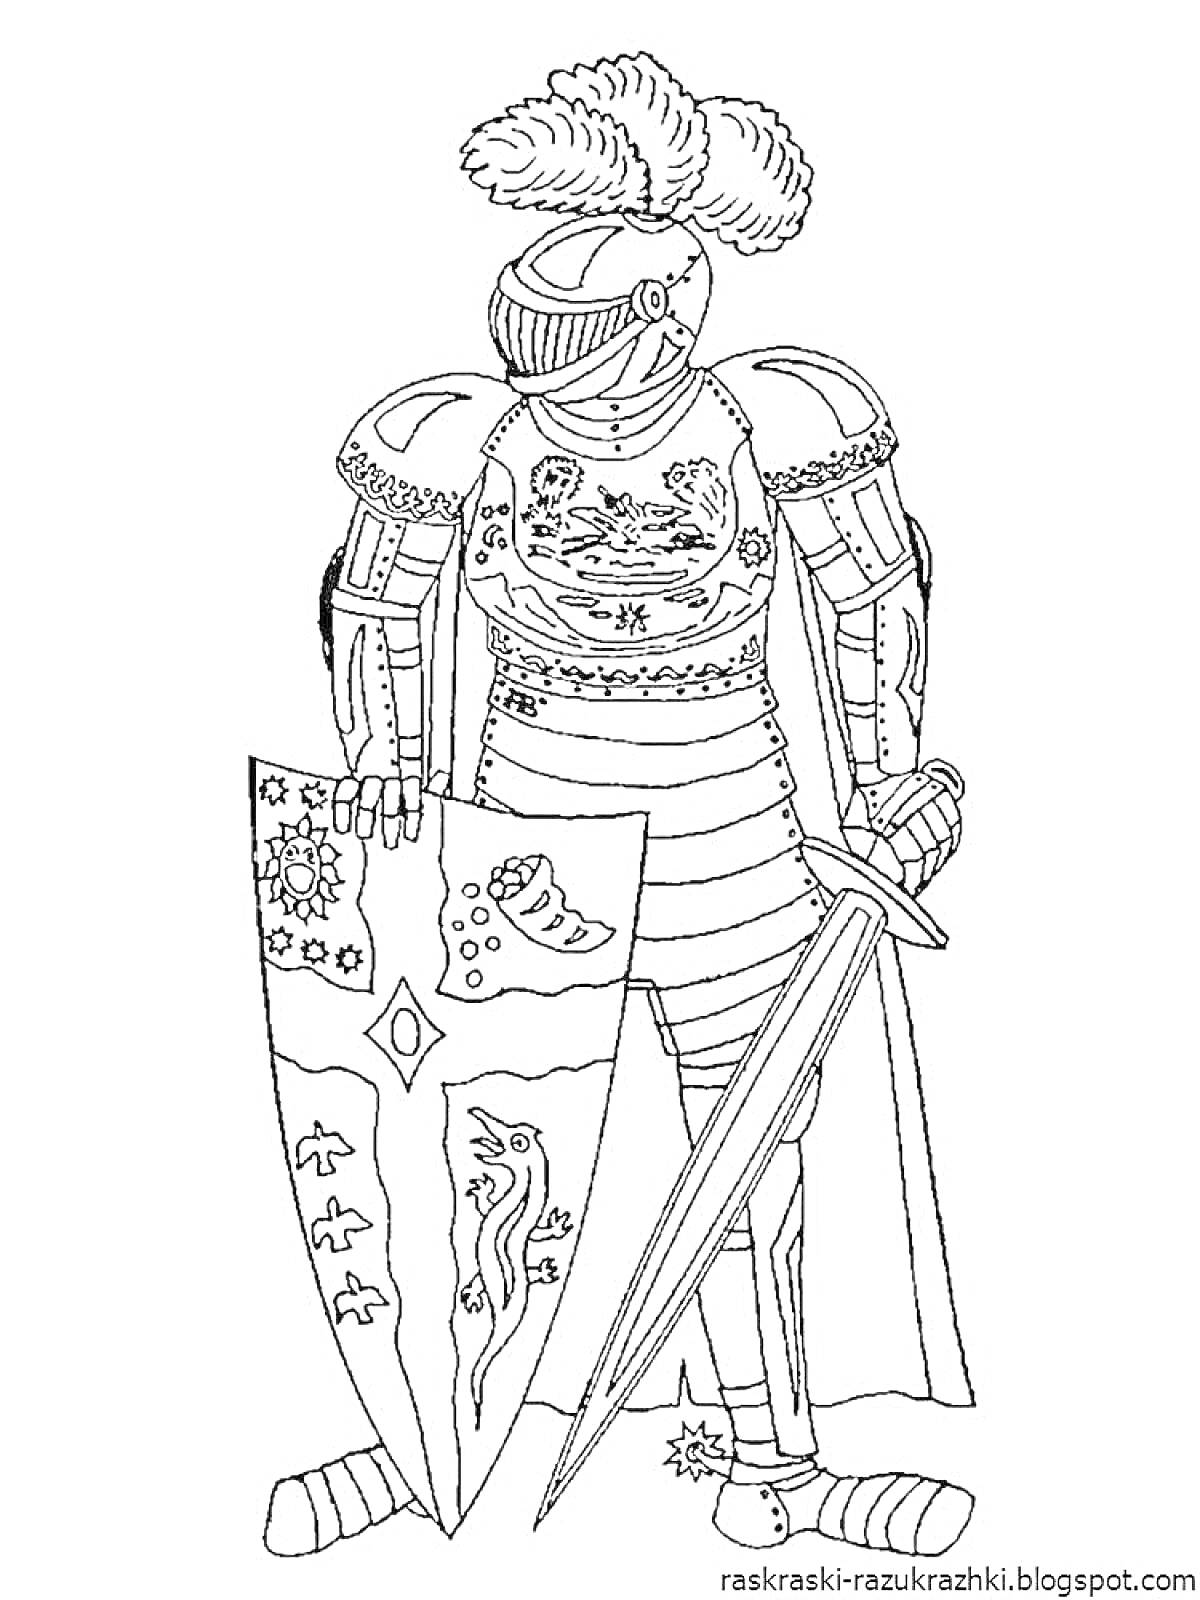 Раскраска Рыцарь в латах с пером на шлеме, с мечом и украшенным гербами щитом